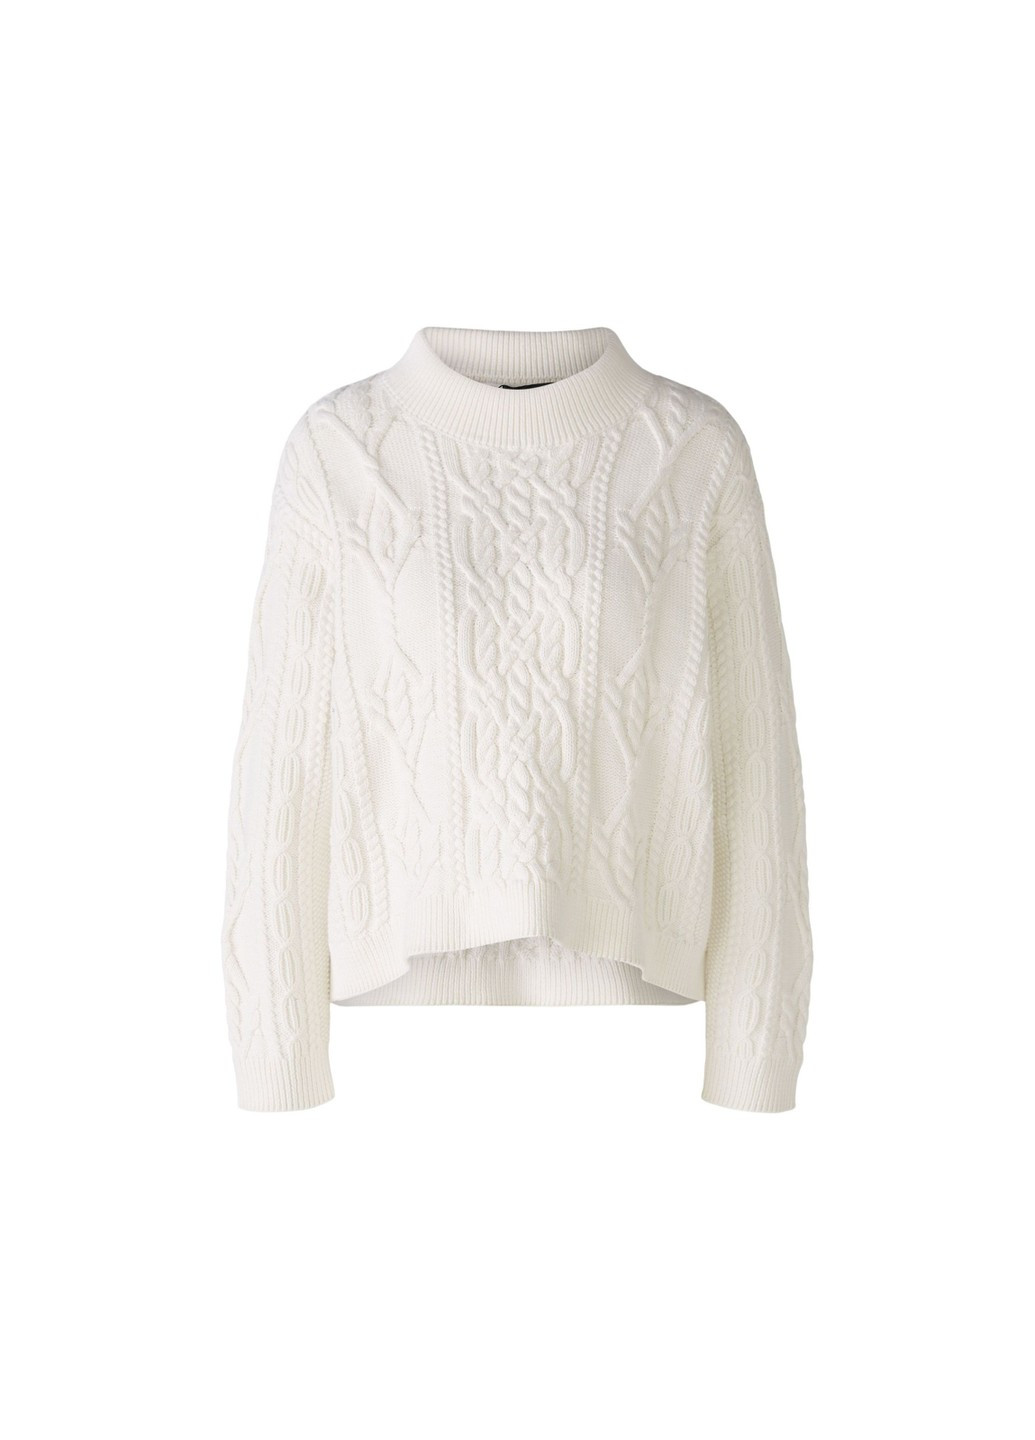 Білий демісезонний жіночий светр 86040 1018 білий 46 джемпер Oui